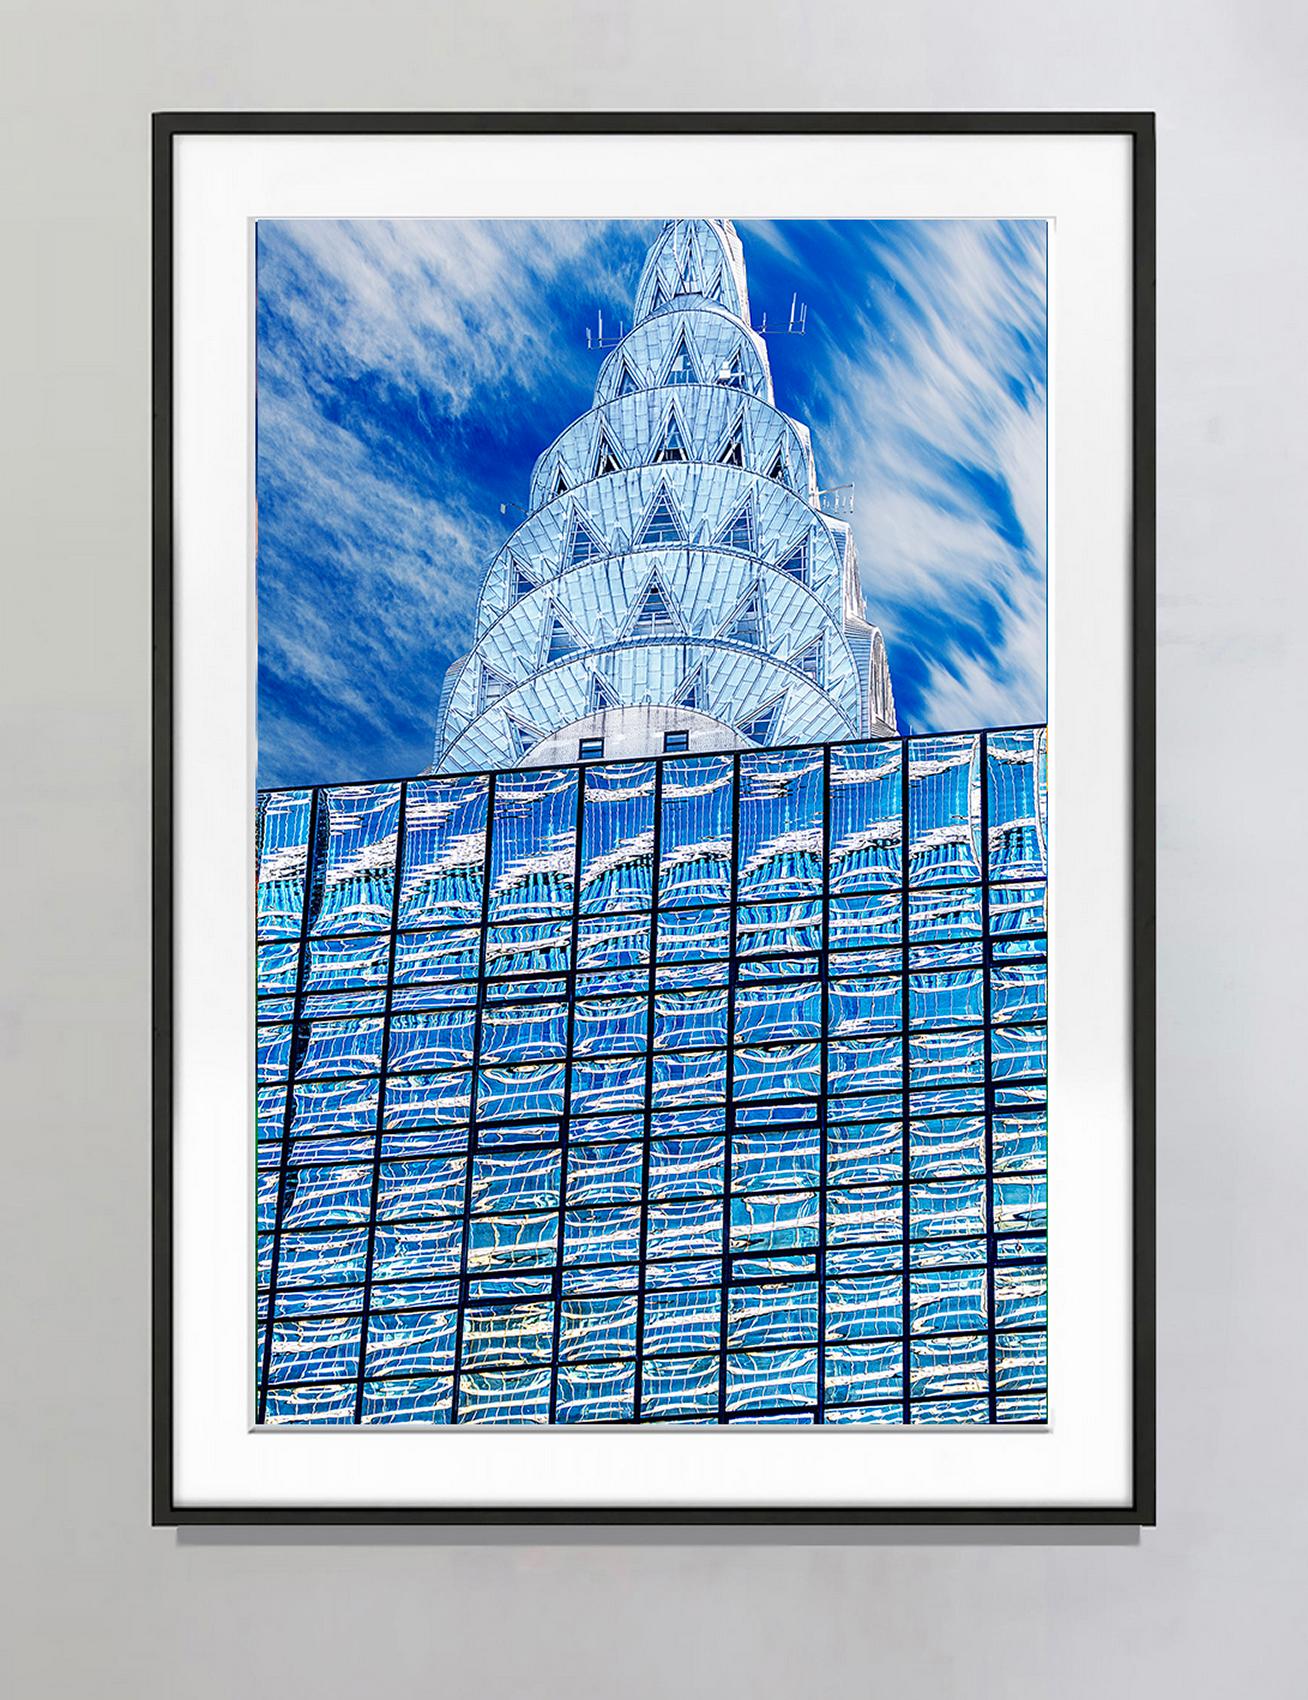 Chrysler-Gebäudeplatte  Art déco-Architektur in Blau und Silber – Photograph von Mitchell Funk